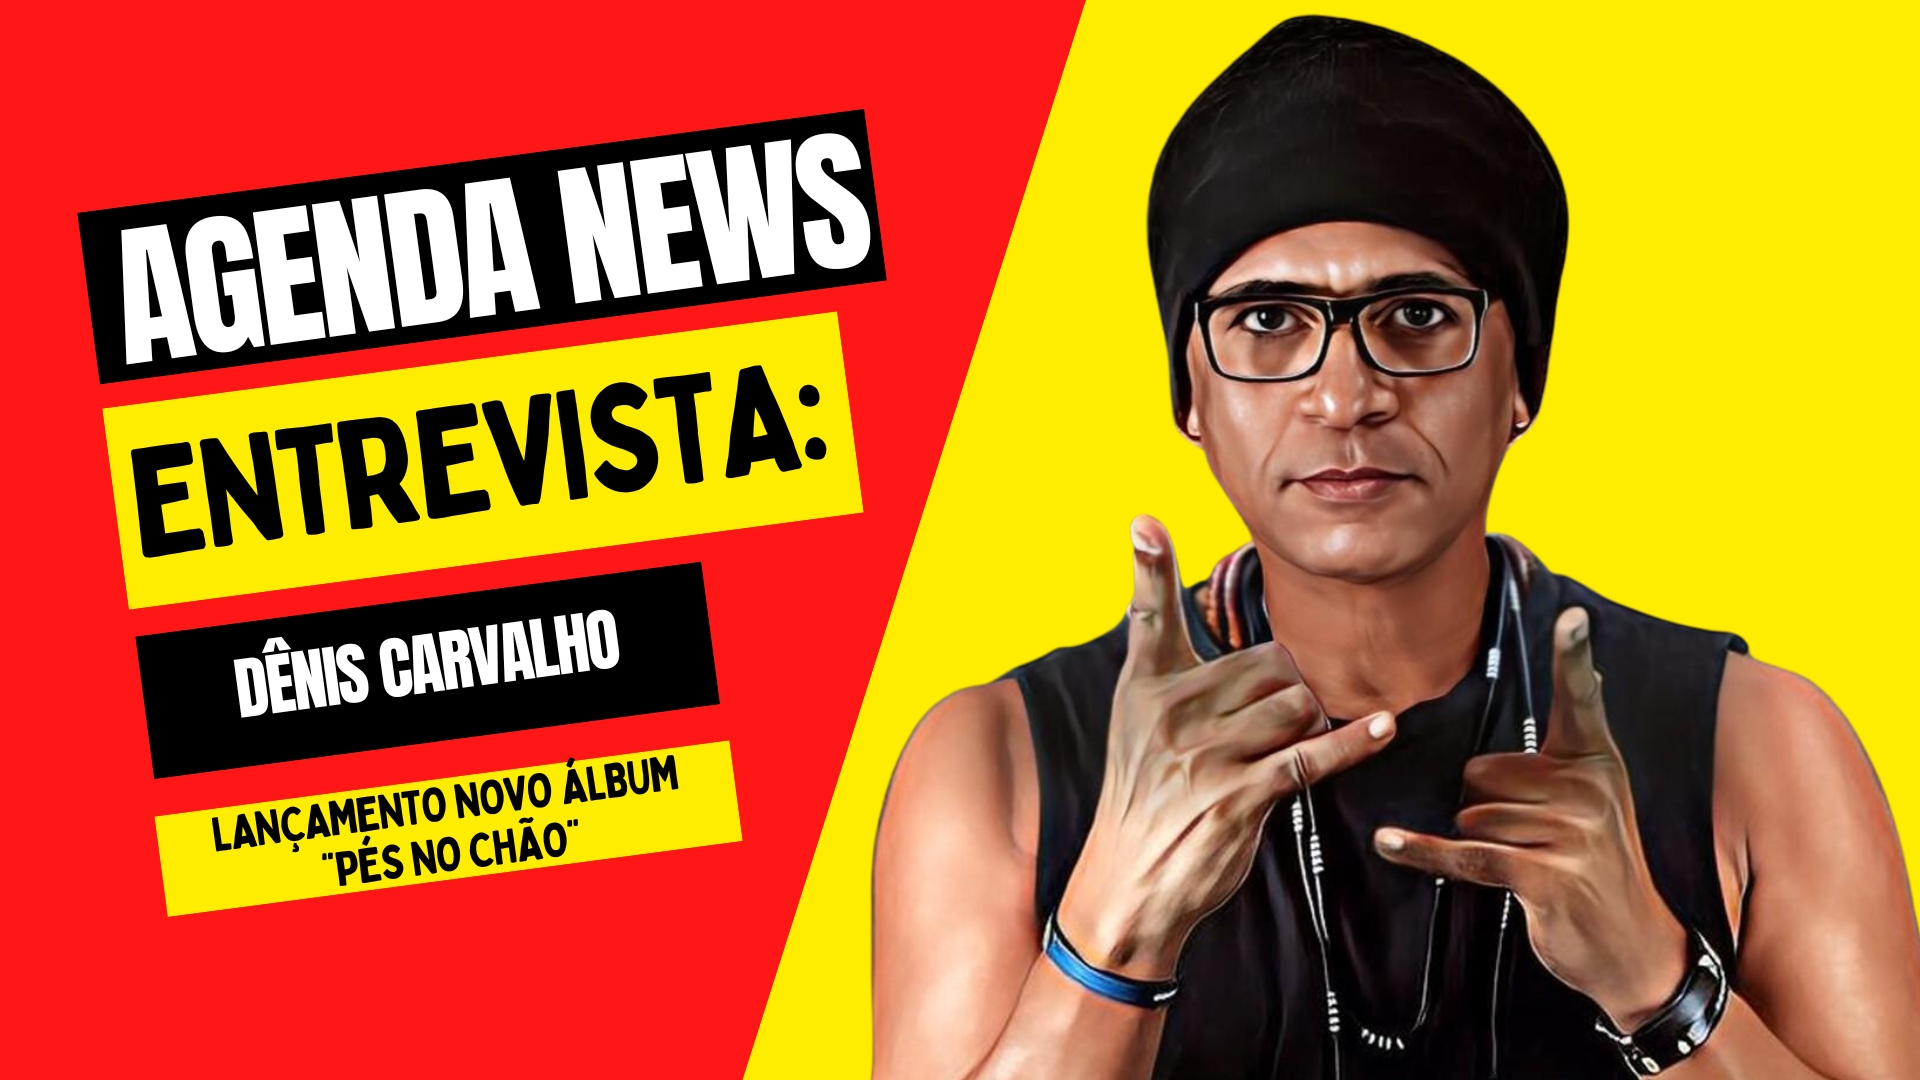 Agenda News entrevista Dênis Carvalho, da Banda Nitro - News Rondônia